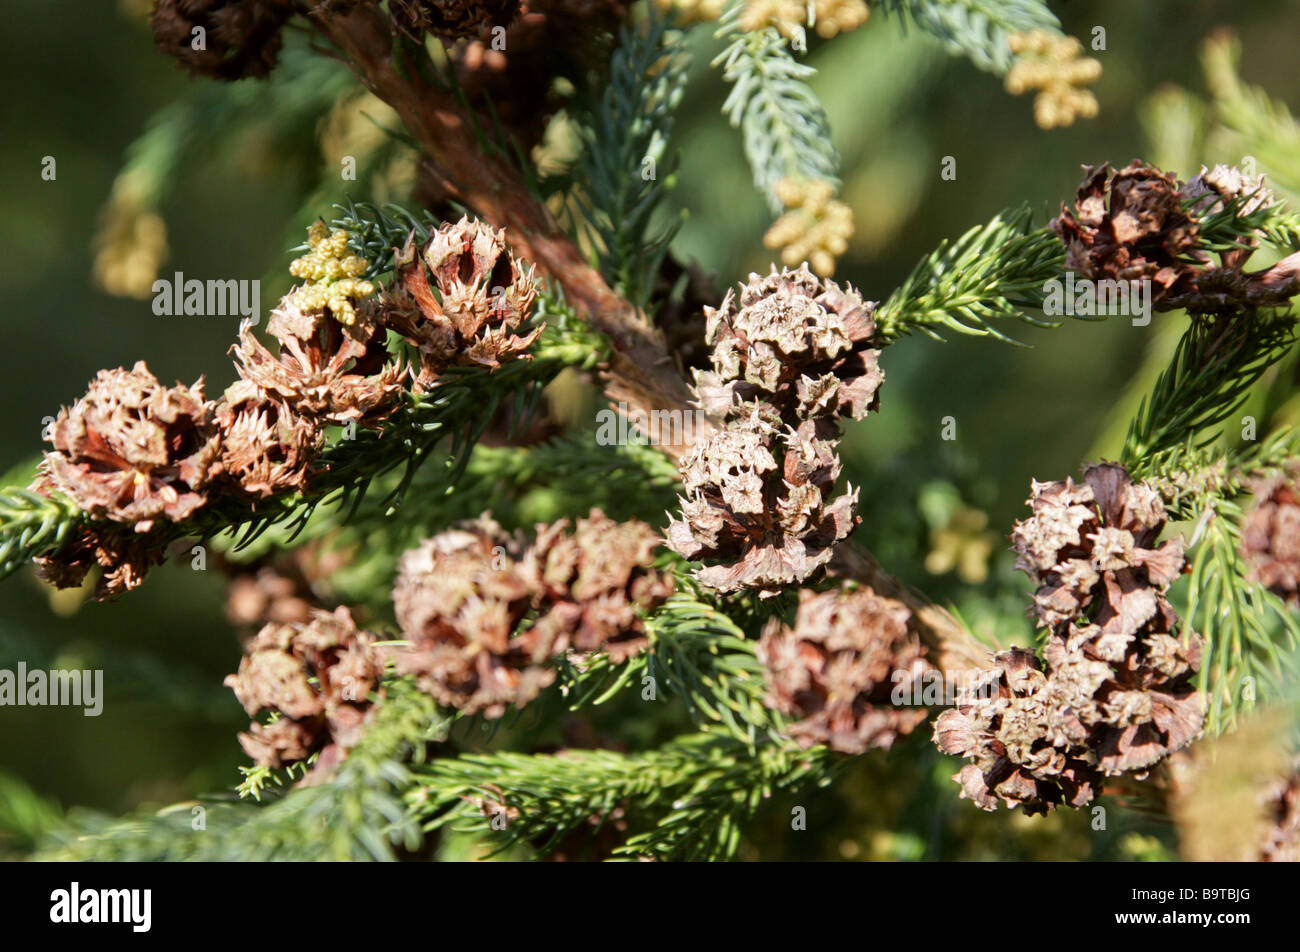 Japanese Cedar, Cryptomeria japonica, Cupressaceae, Japan Stock Photo